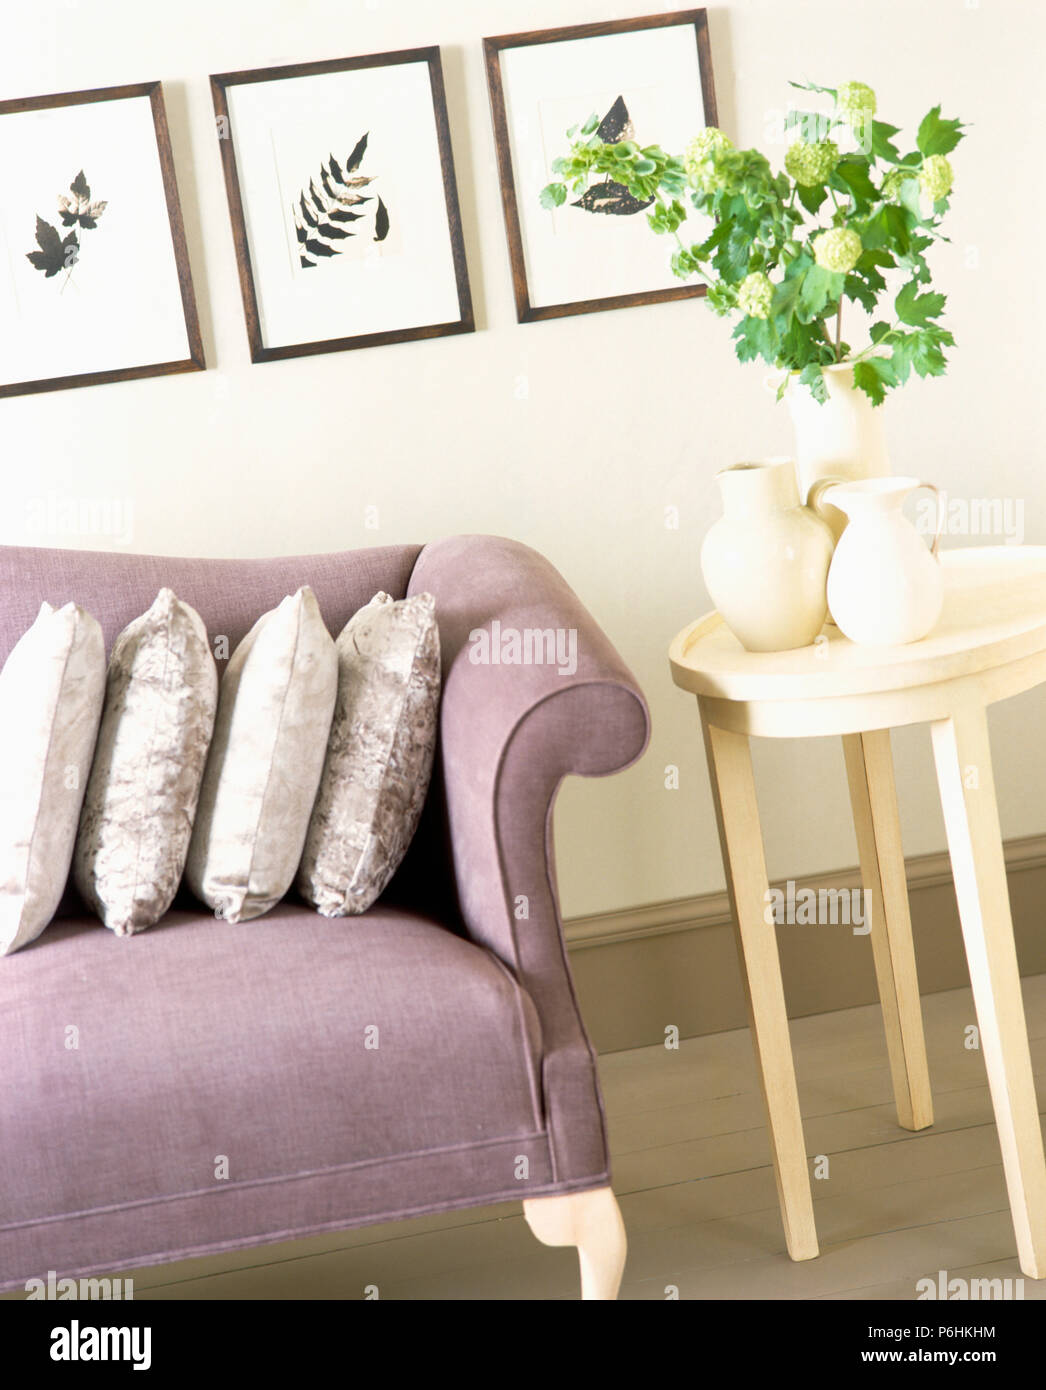 Drei gedrückt - Leaf Bilder an der Wand oben mauve Sofa im Wohnzimmer mit einer Gruppe von Cream jugs auf kleinen creme Tabelle Stockfoto